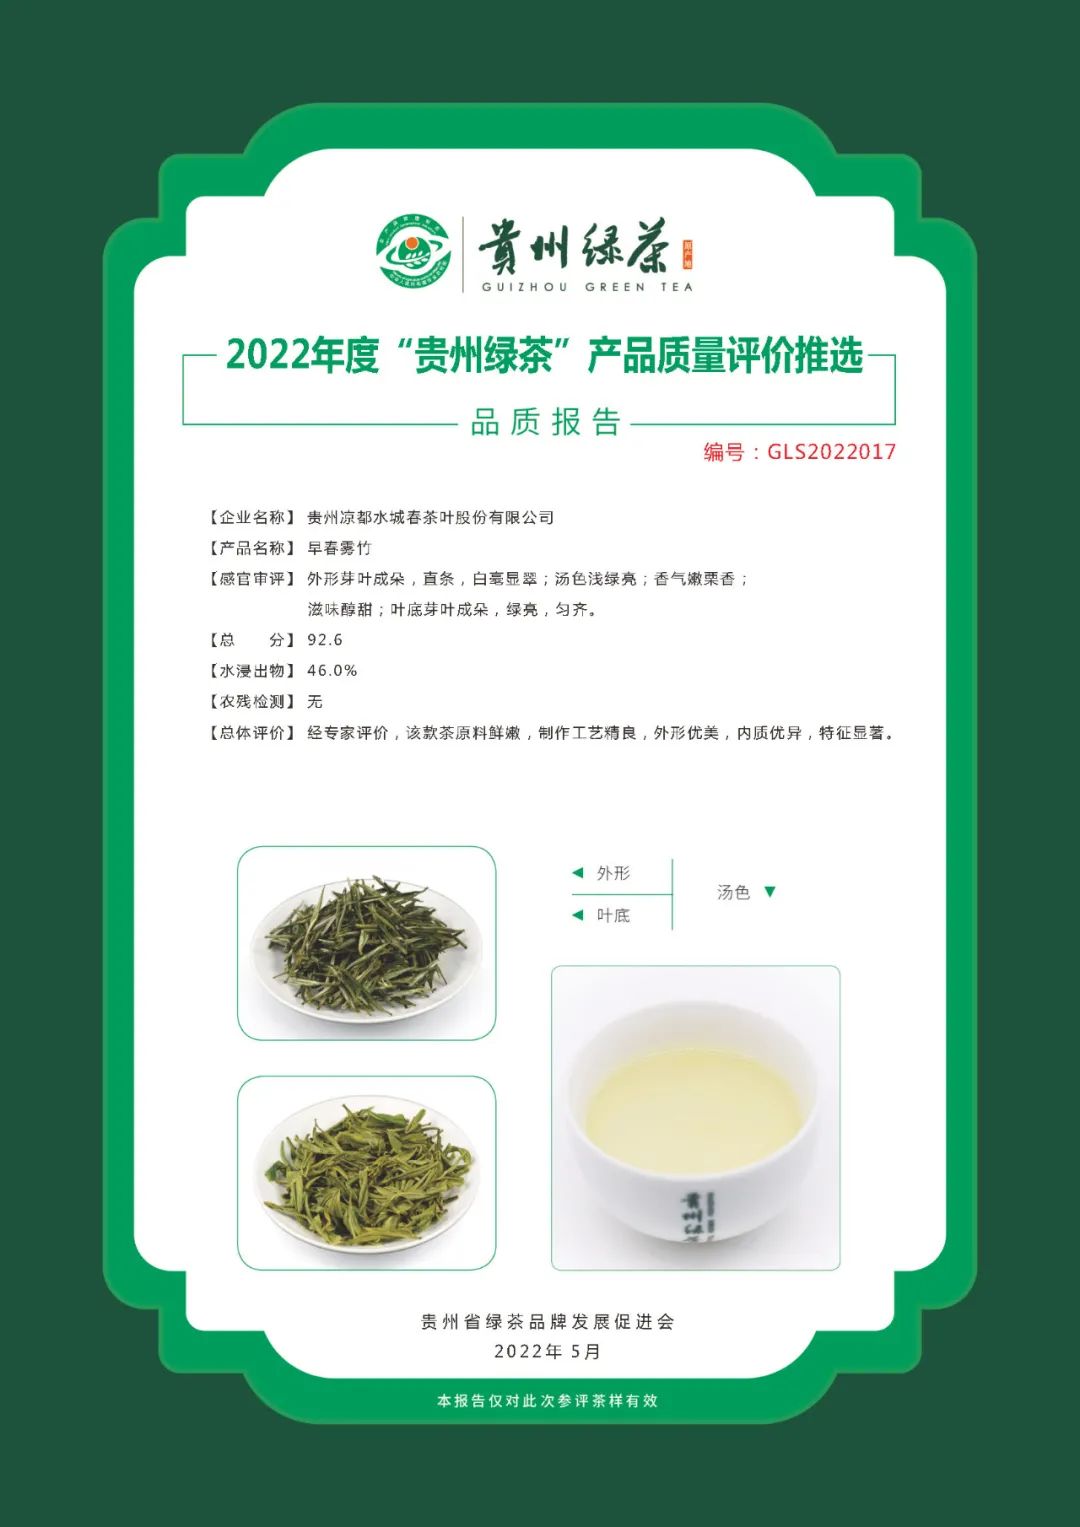 2022年“贵州绿茶”品质报告丨贵州凉都水城春茶叶股份有限公司—早春雾竹